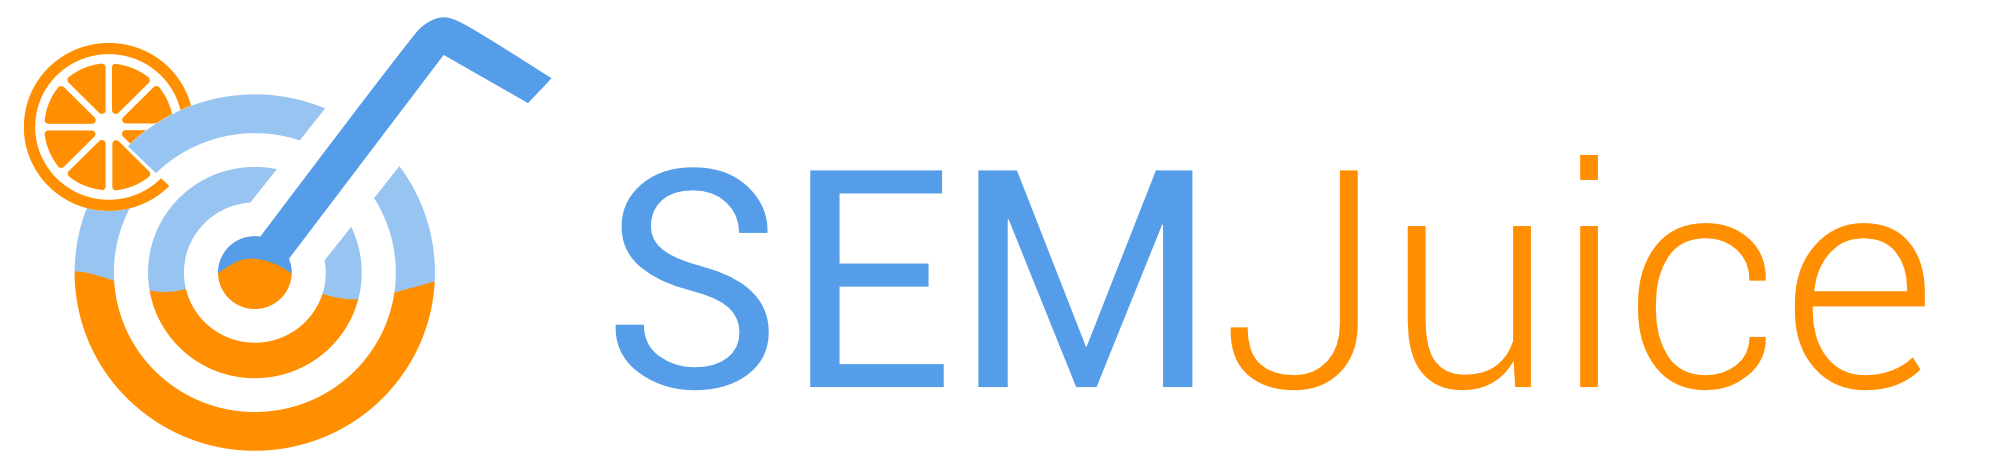 semjuice logo